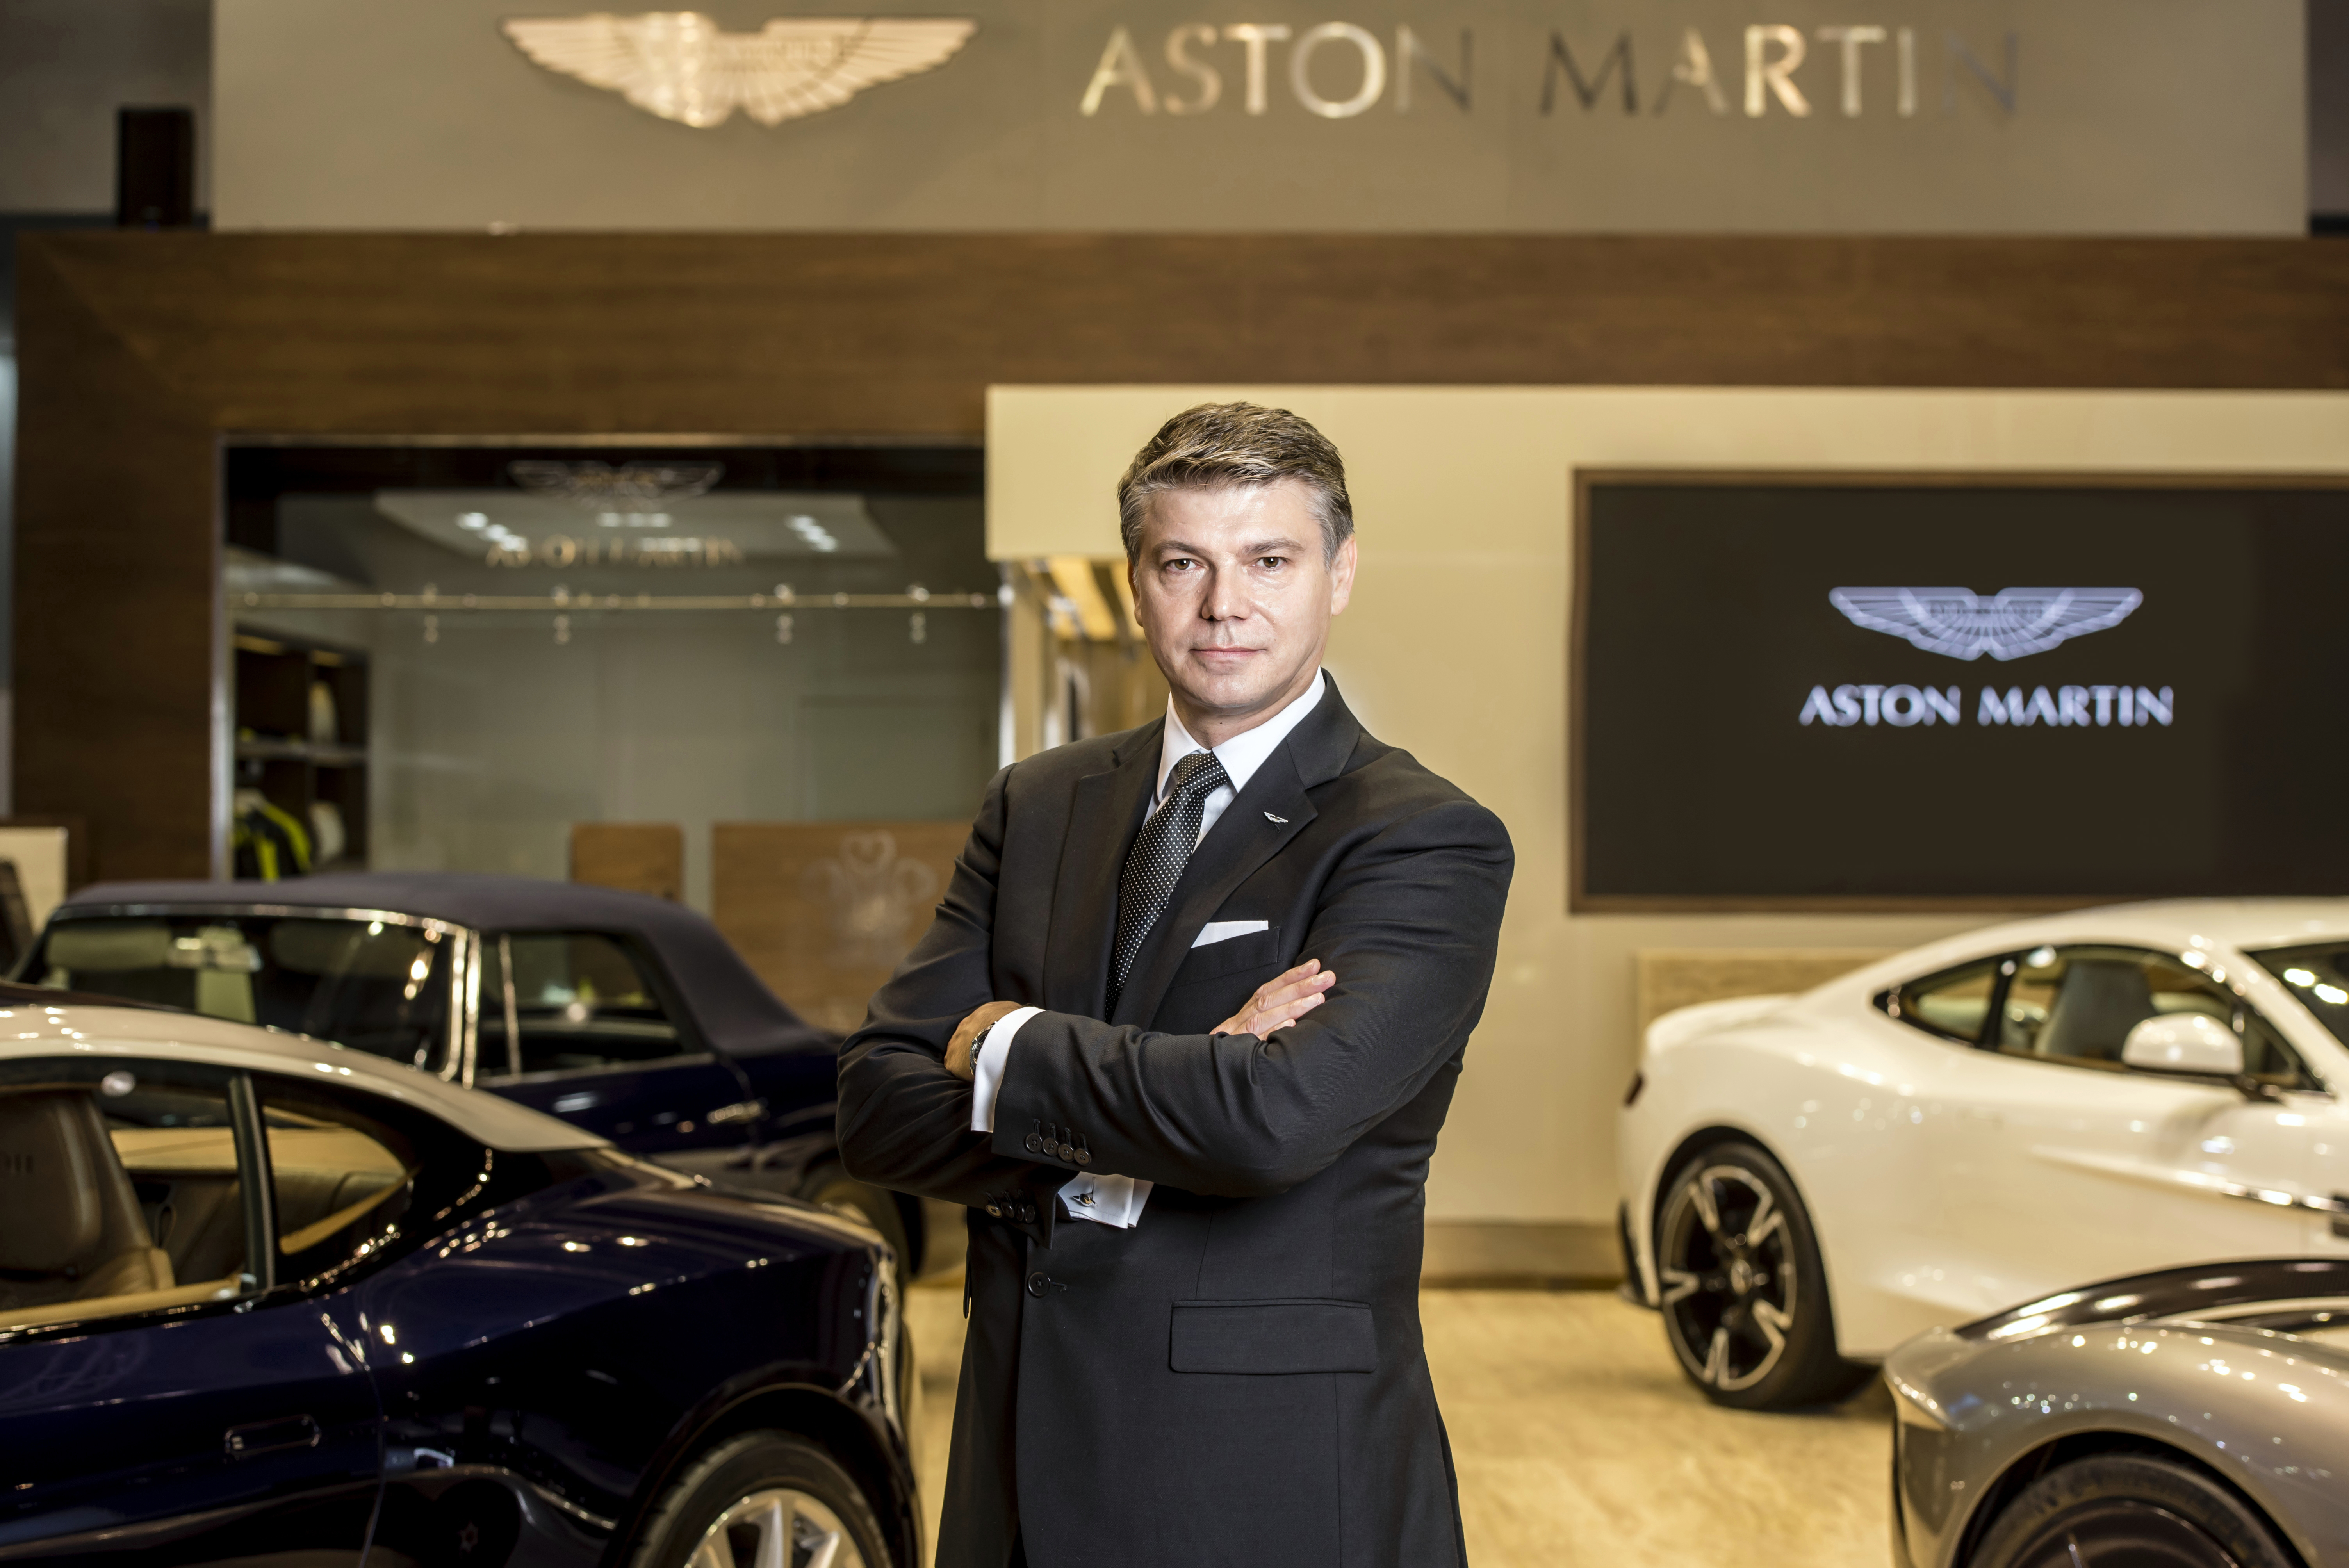 Aston Martin MENA CEO Christopher Sheppard